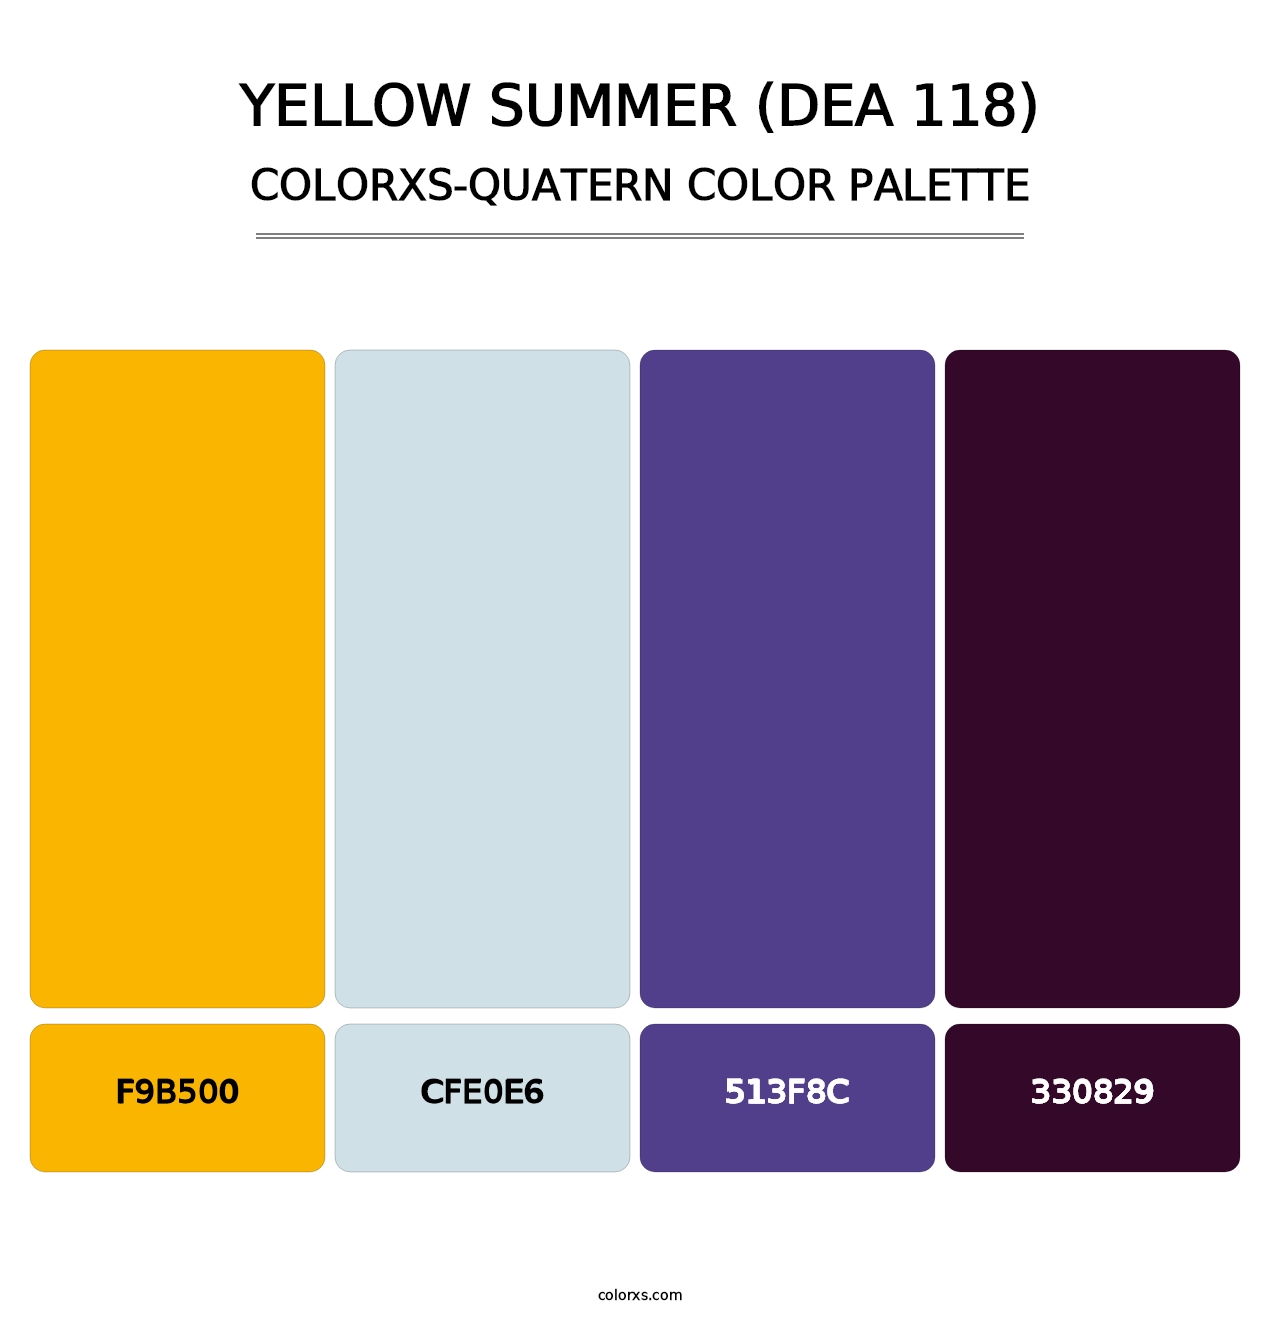 Yellow Summer (DEA 118) - Colorxs Quatern Palette